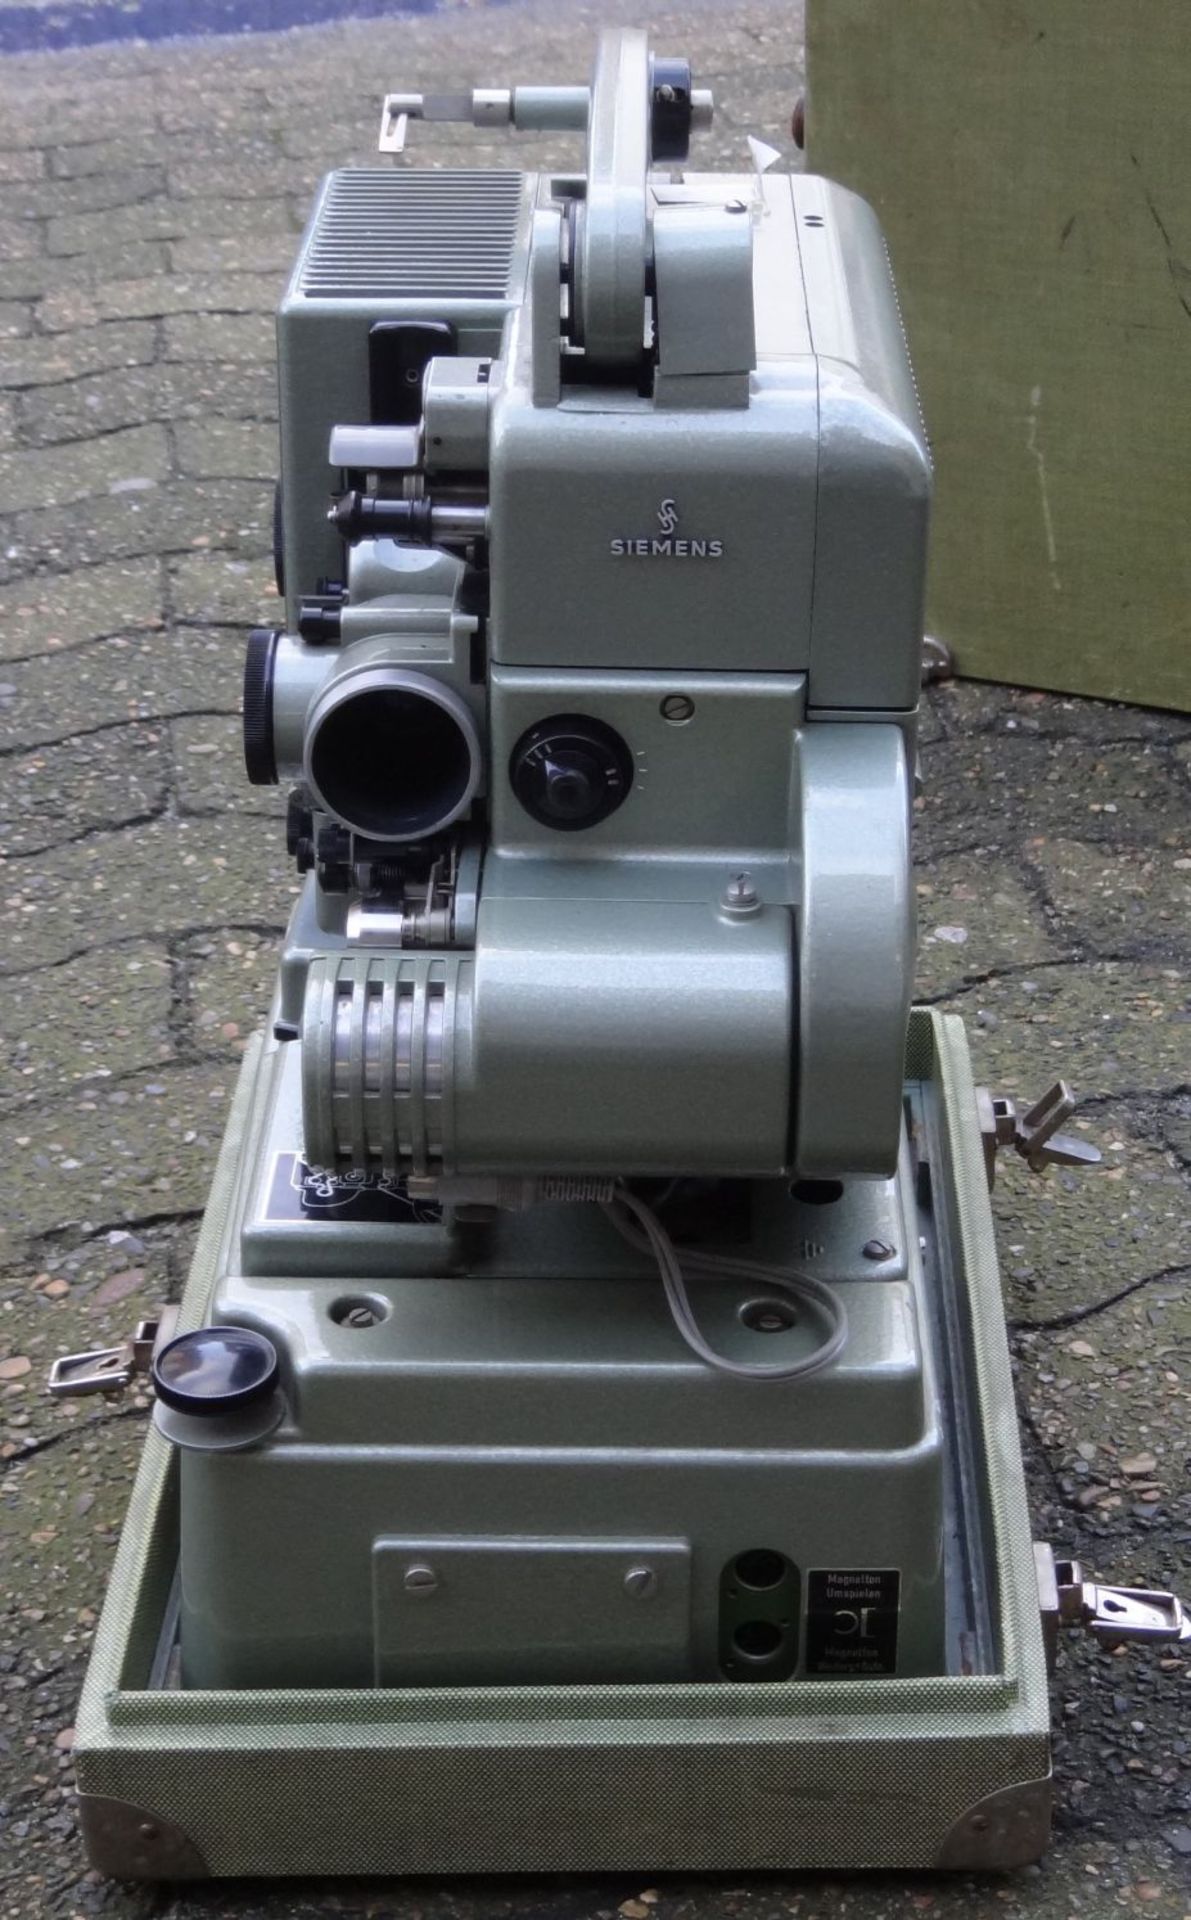 grosser Tonfilm-Projektor "Siemens" in Koffer, H-50 cm, 28x42 cm, 26 kg. - Bild 8 aus 10